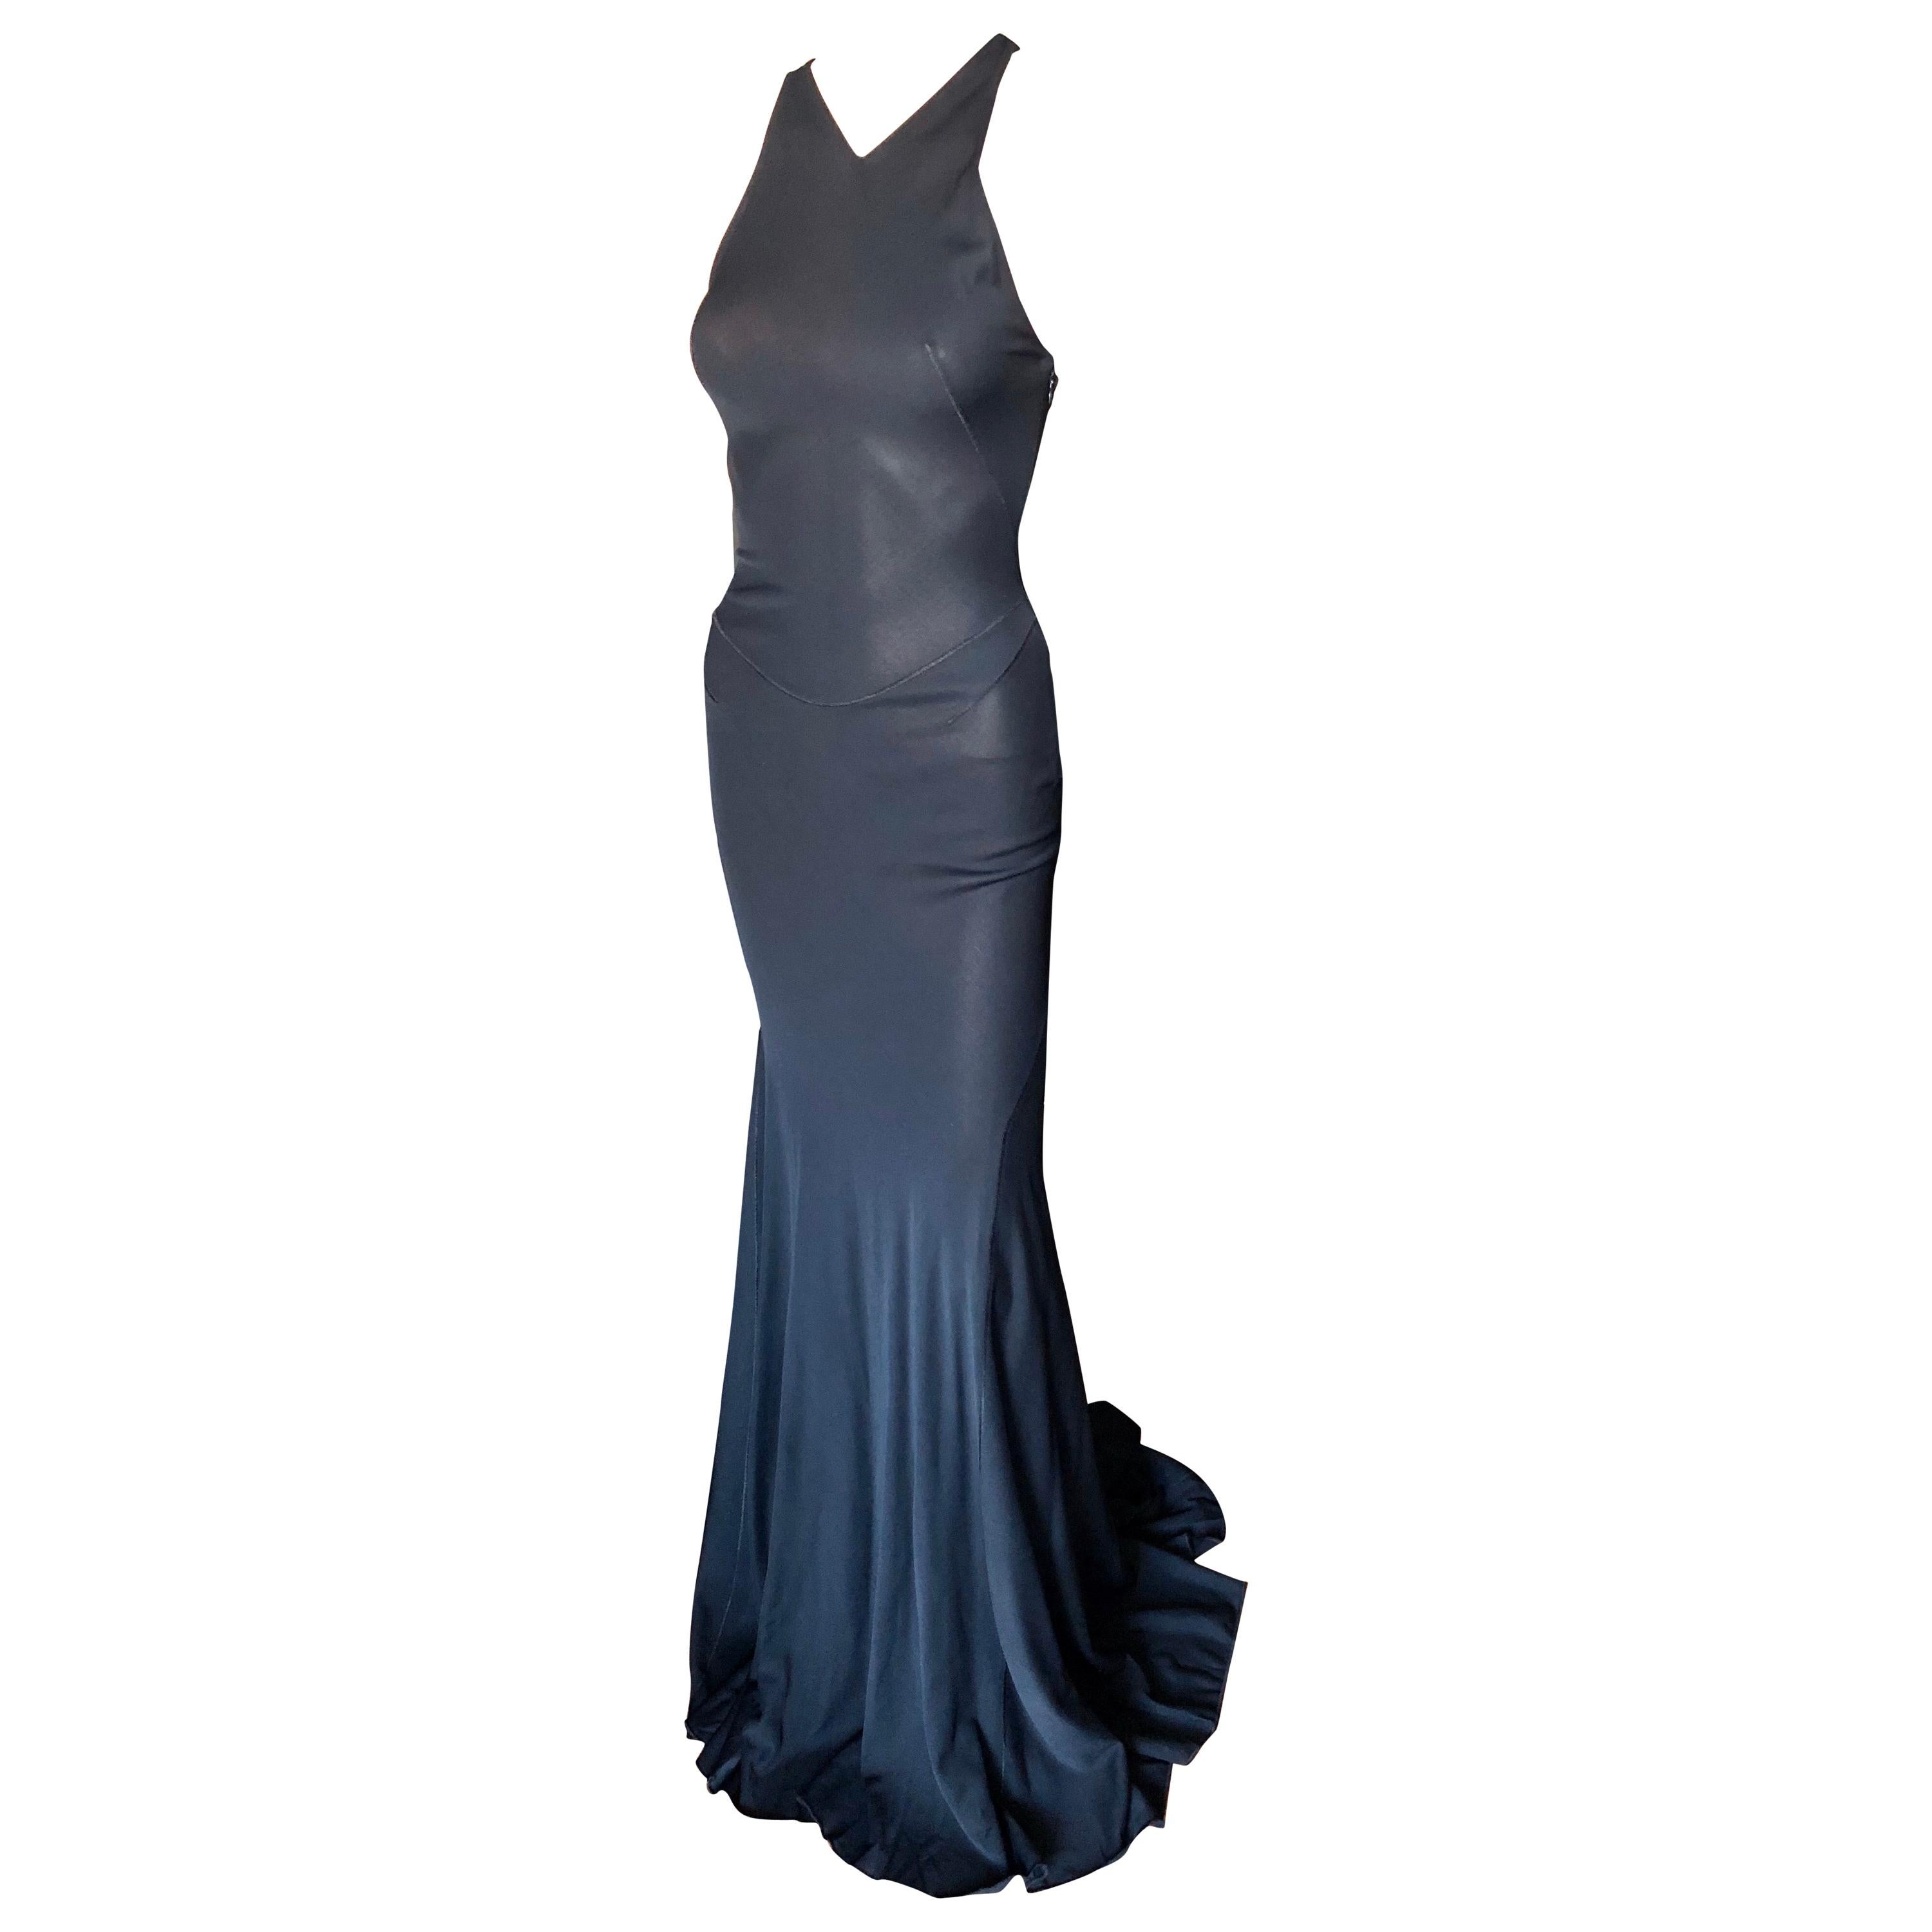 Azzedine Alaïa F/W 2001 Semi-Sheer Black Gown Maxi Dress